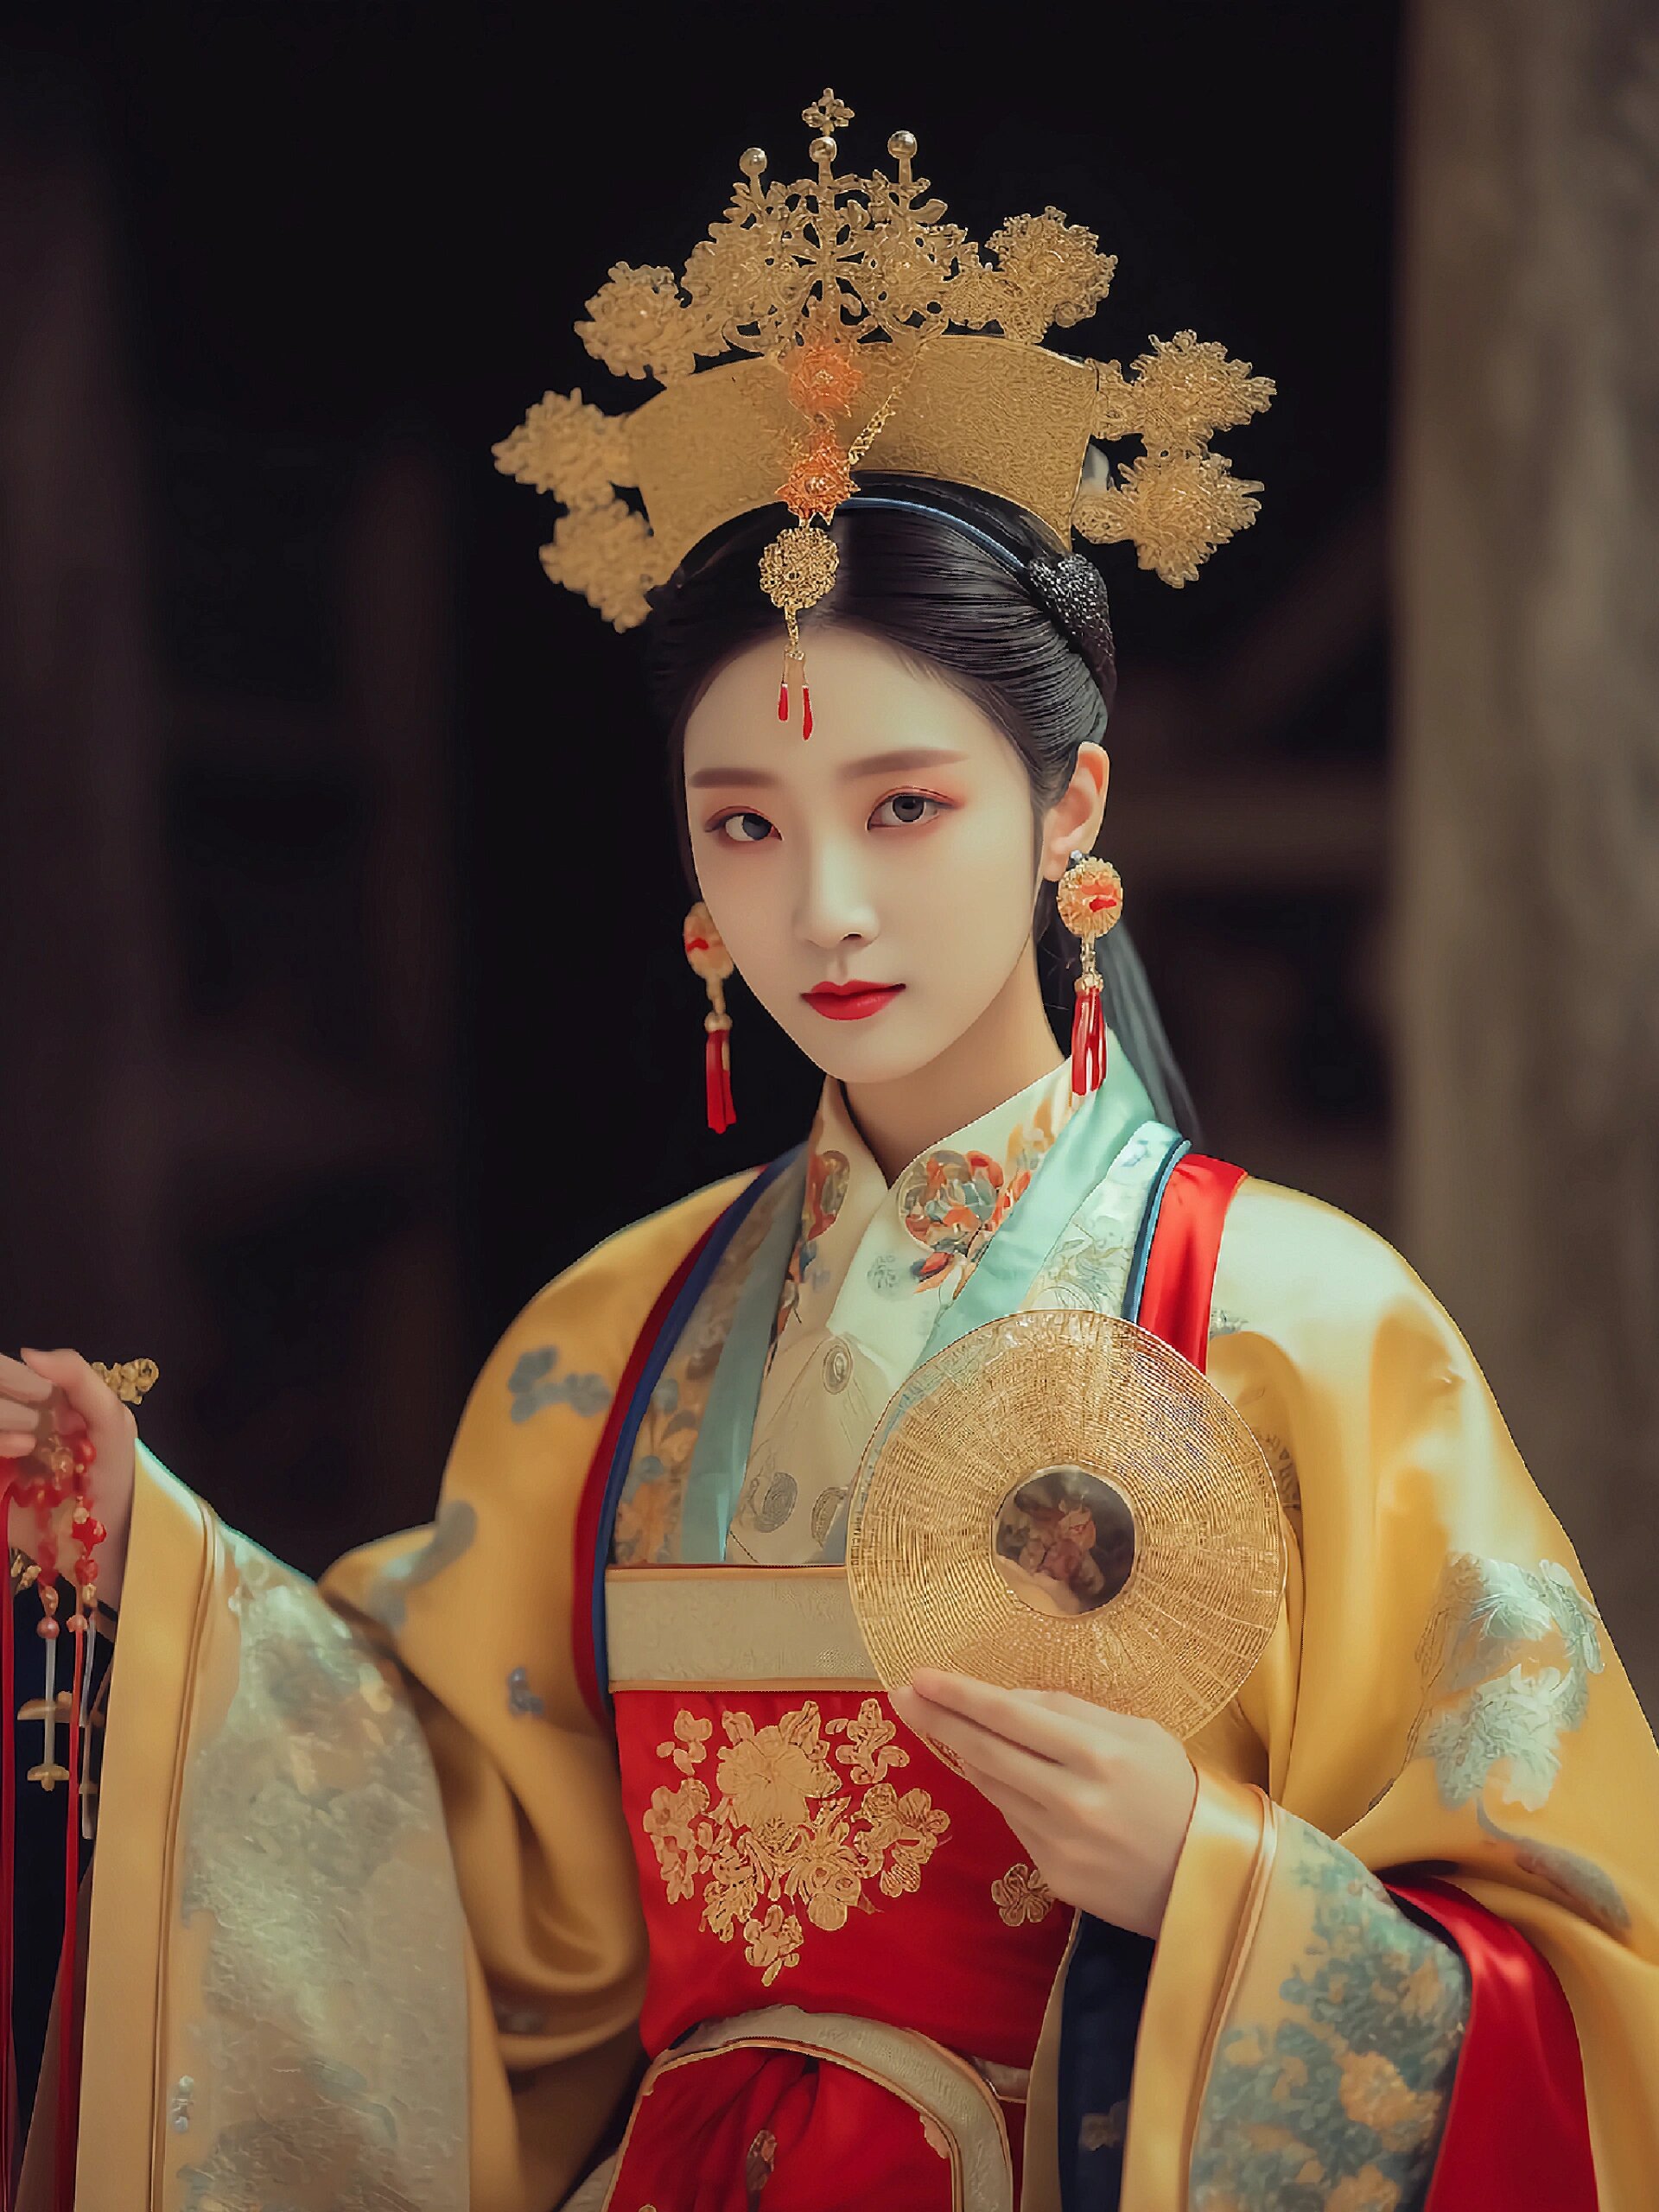 97锦绣华美,富丽堂皇的中国古代皇后服装 中国古代皇后的服装华丽